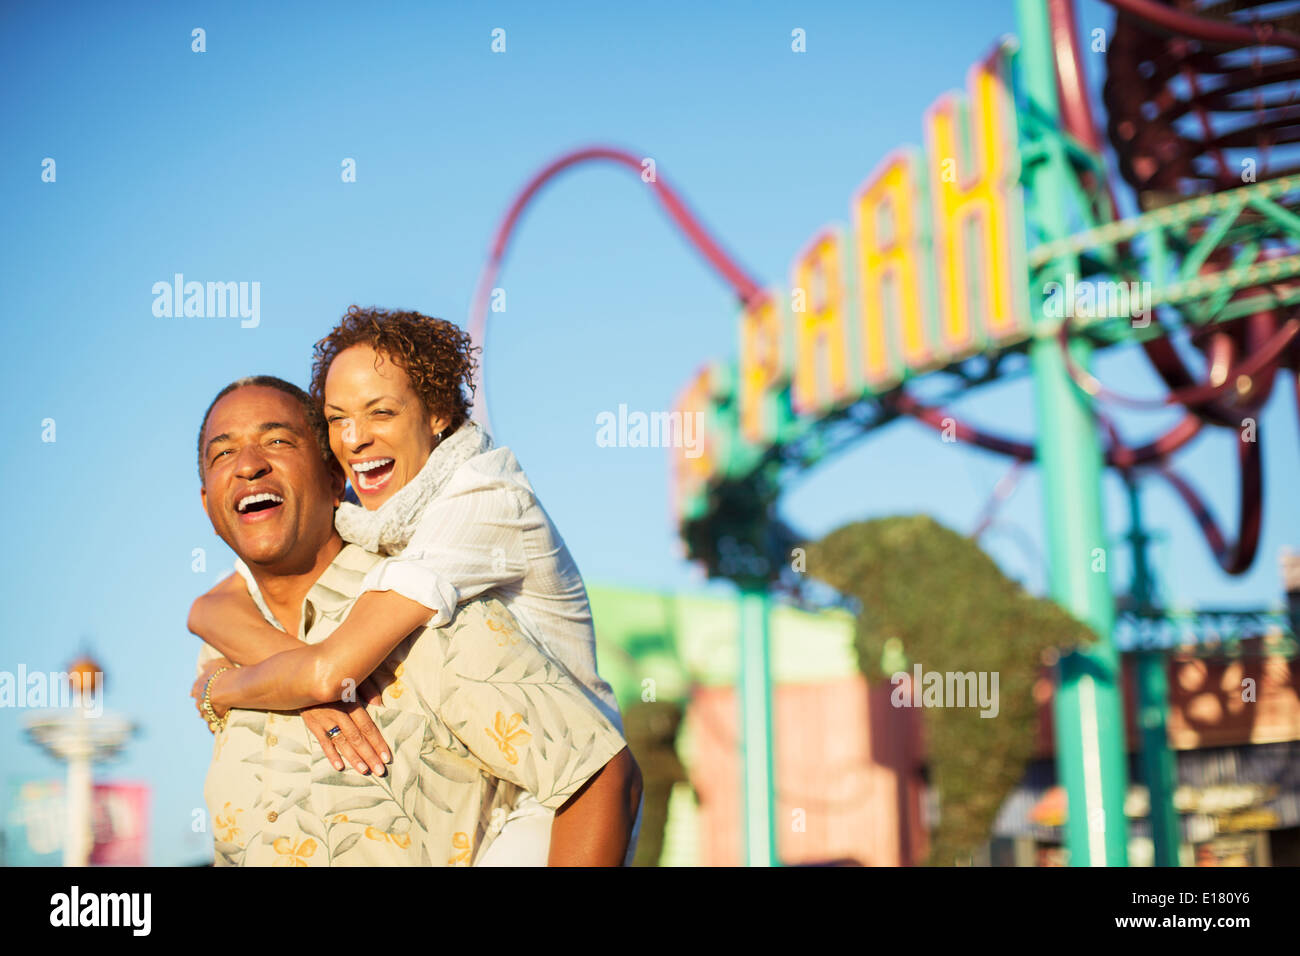 Enthousiaste couple hugging at amusement park Banque D'Images